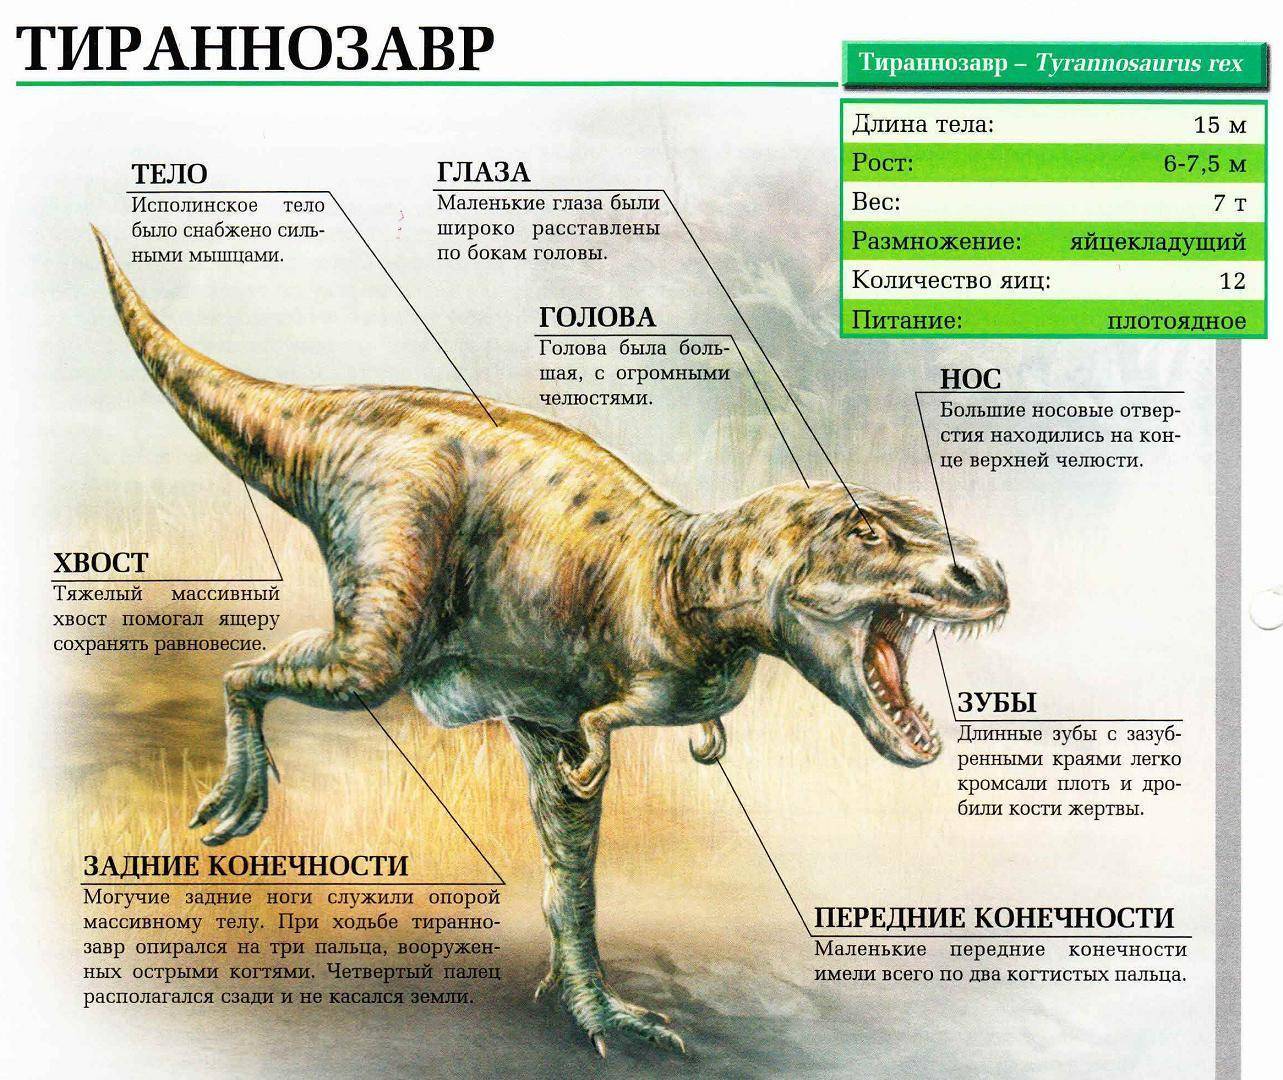 Тираннозавр — posmotre.li